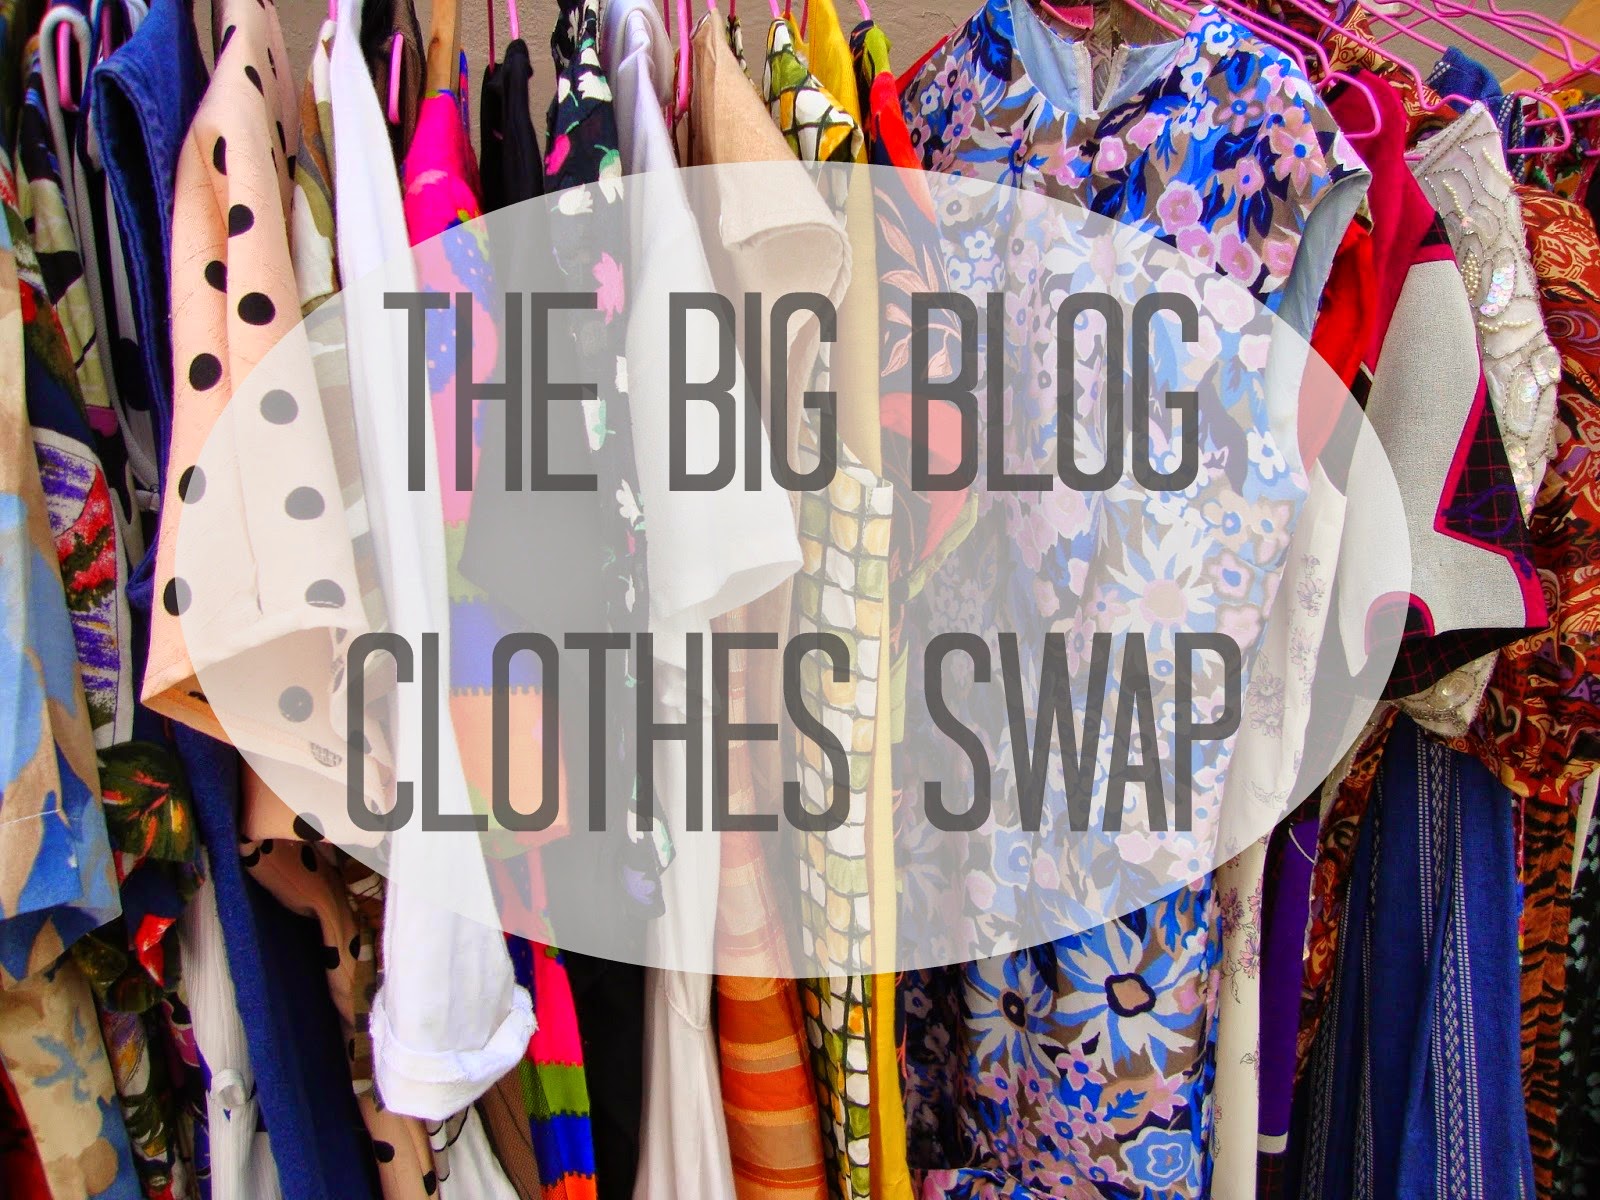 The Big Blog Clothes Swap